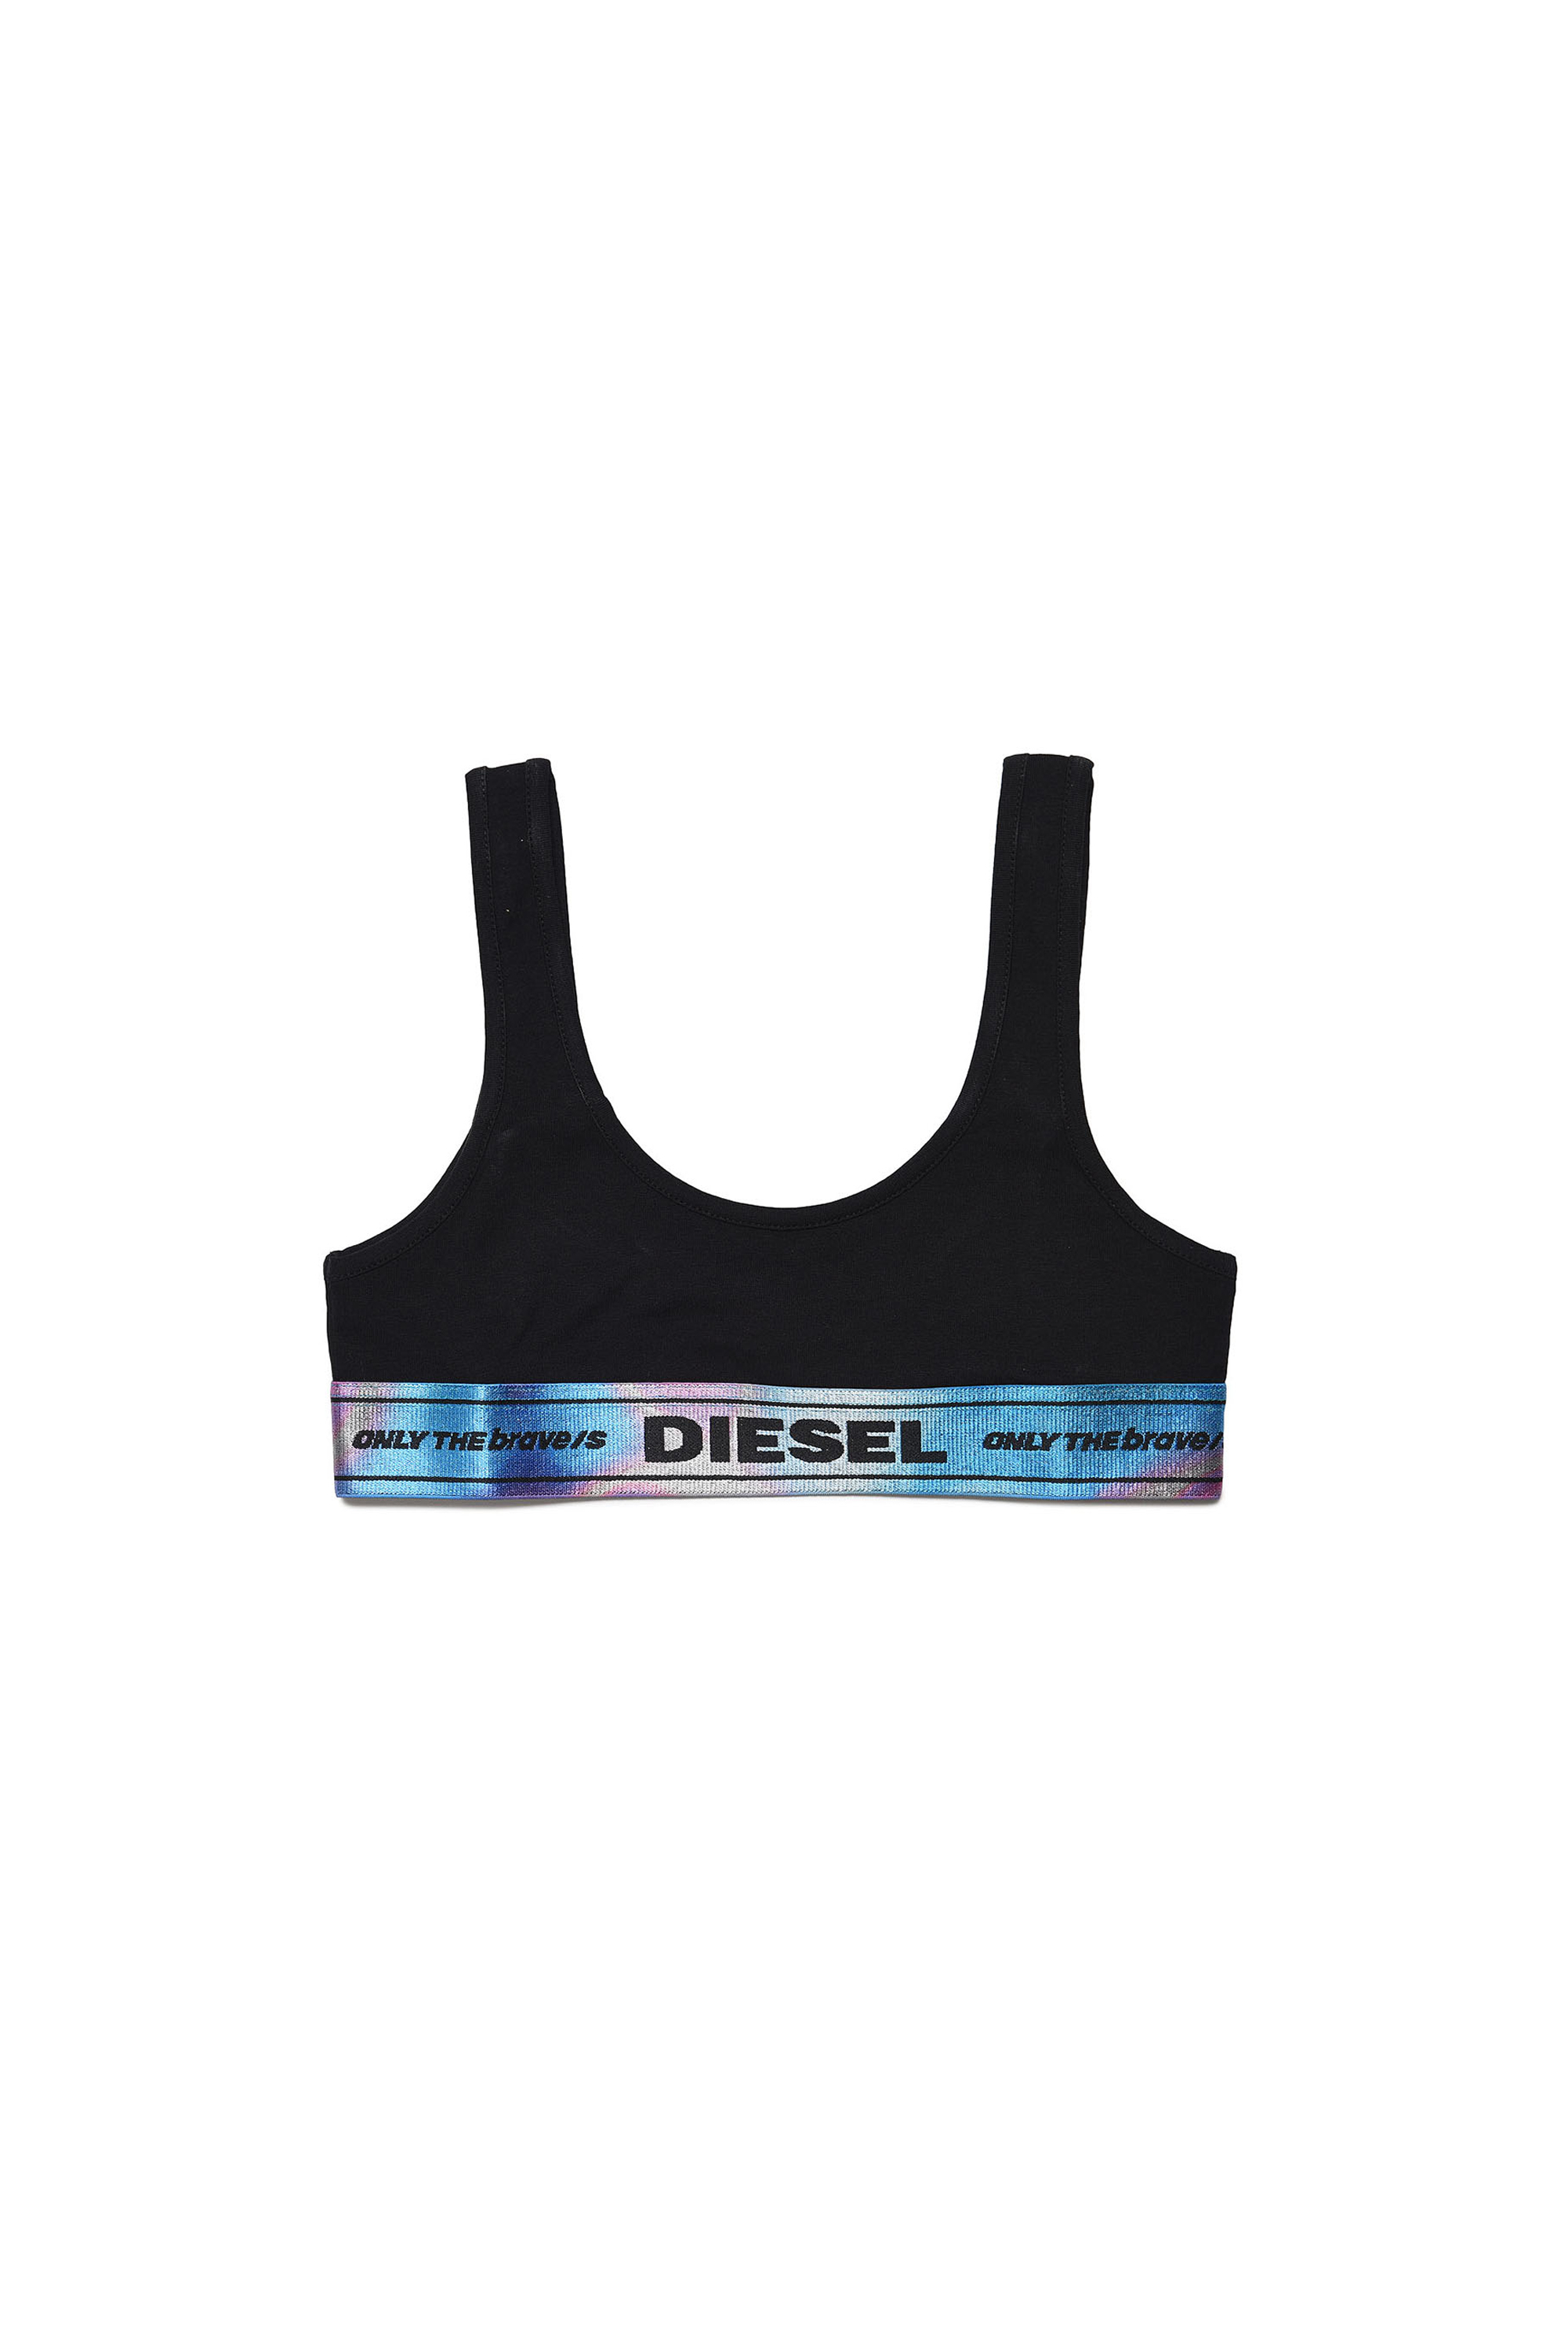 Diesel - UBRAS, Black - Image 1